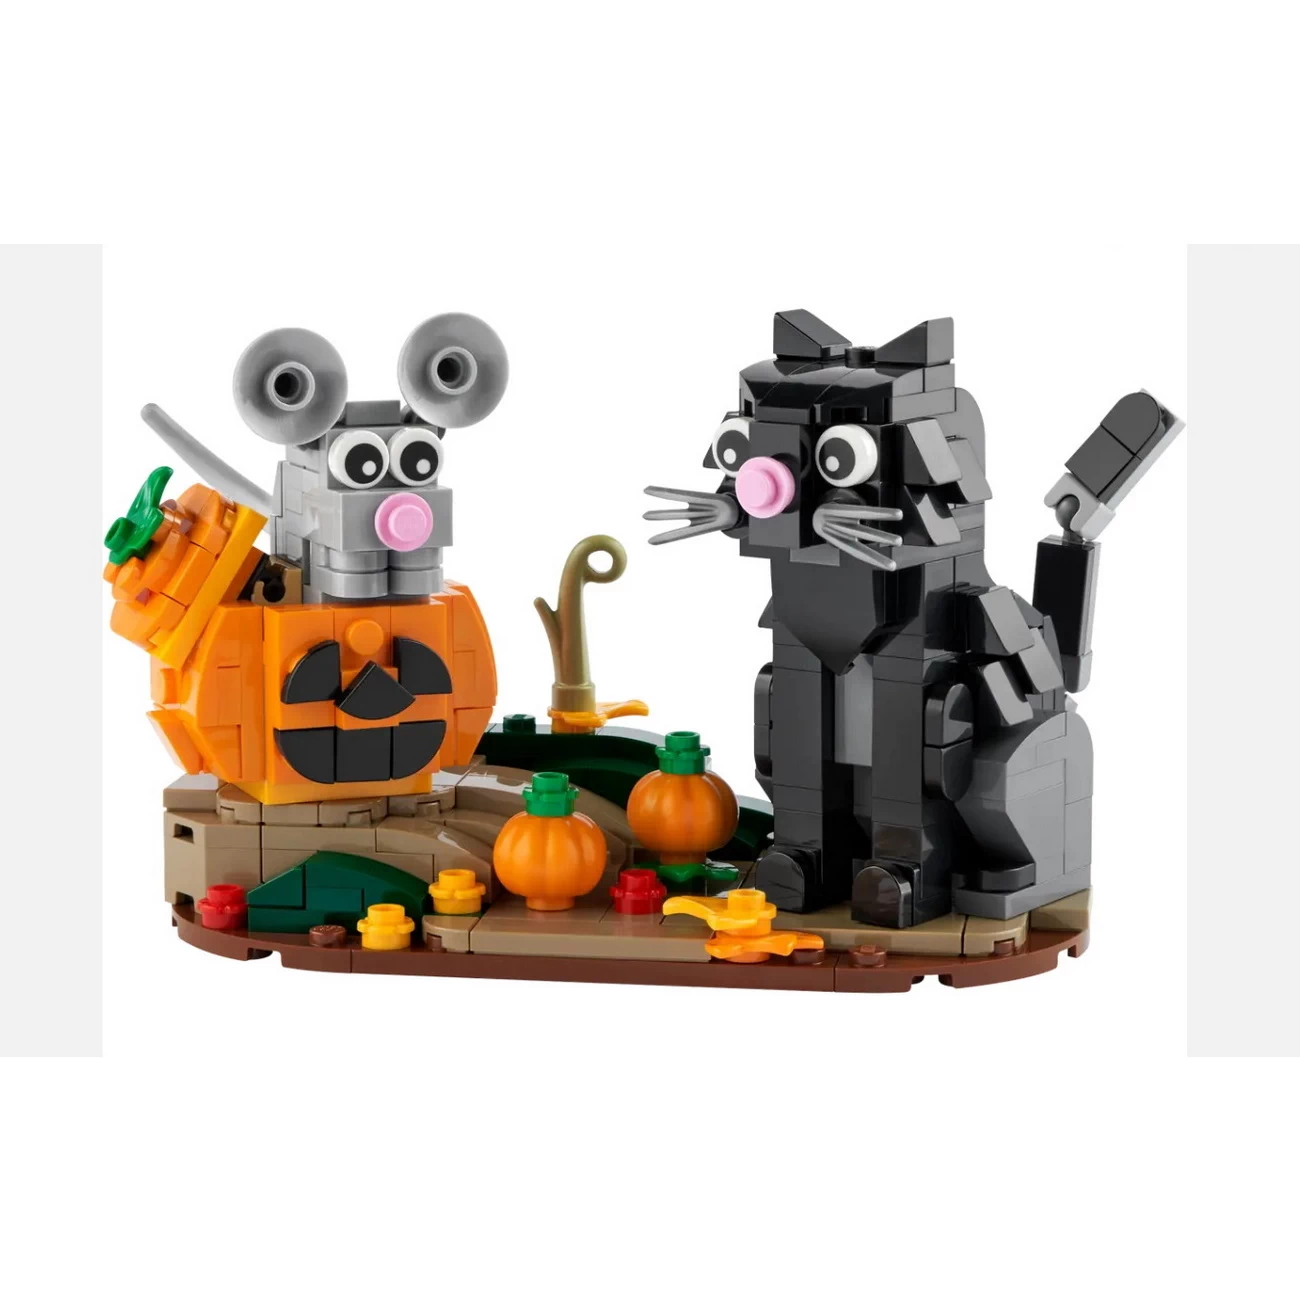 LEGO 40570 - Katz und Maus an Halloween